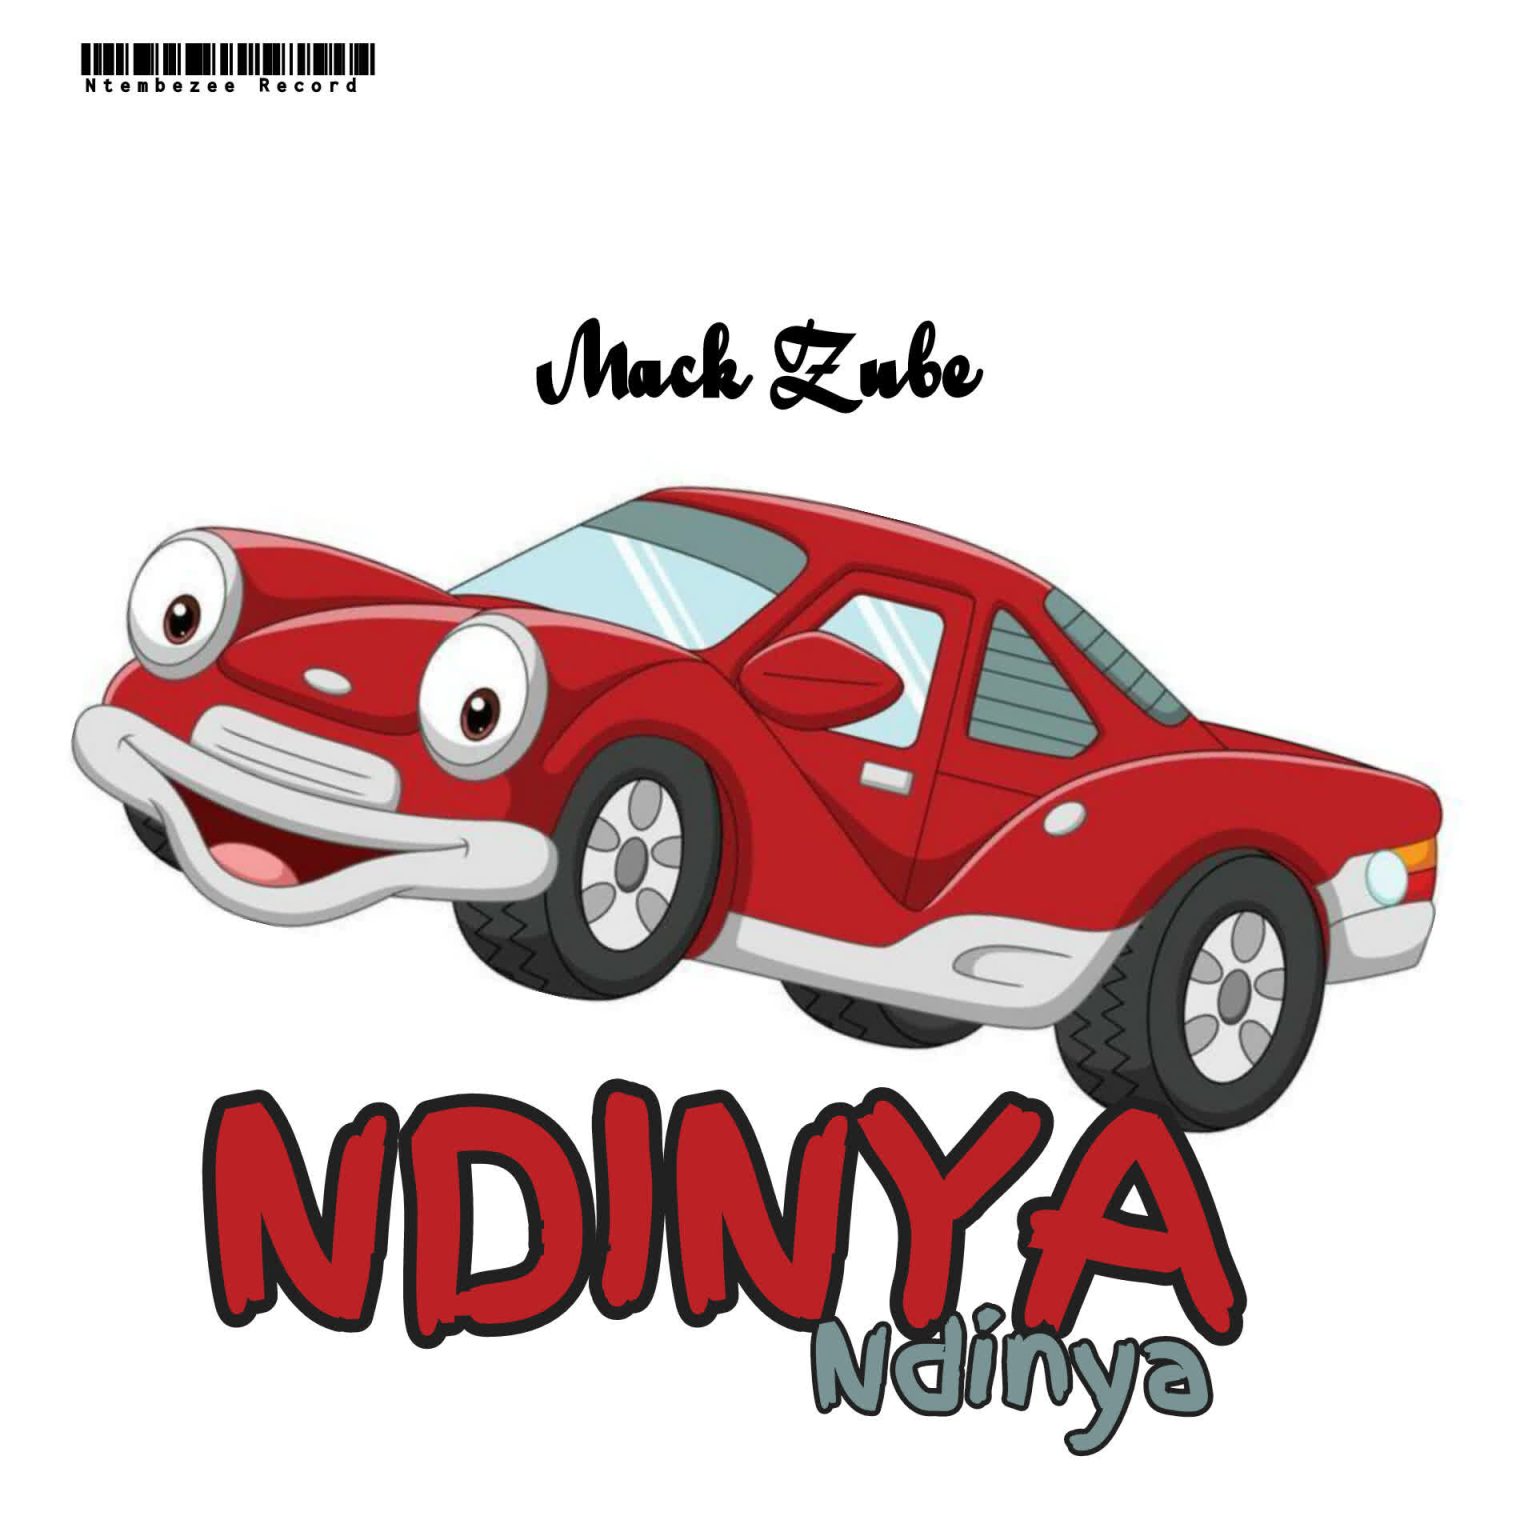  Mack Zube – Ndinya ndinya